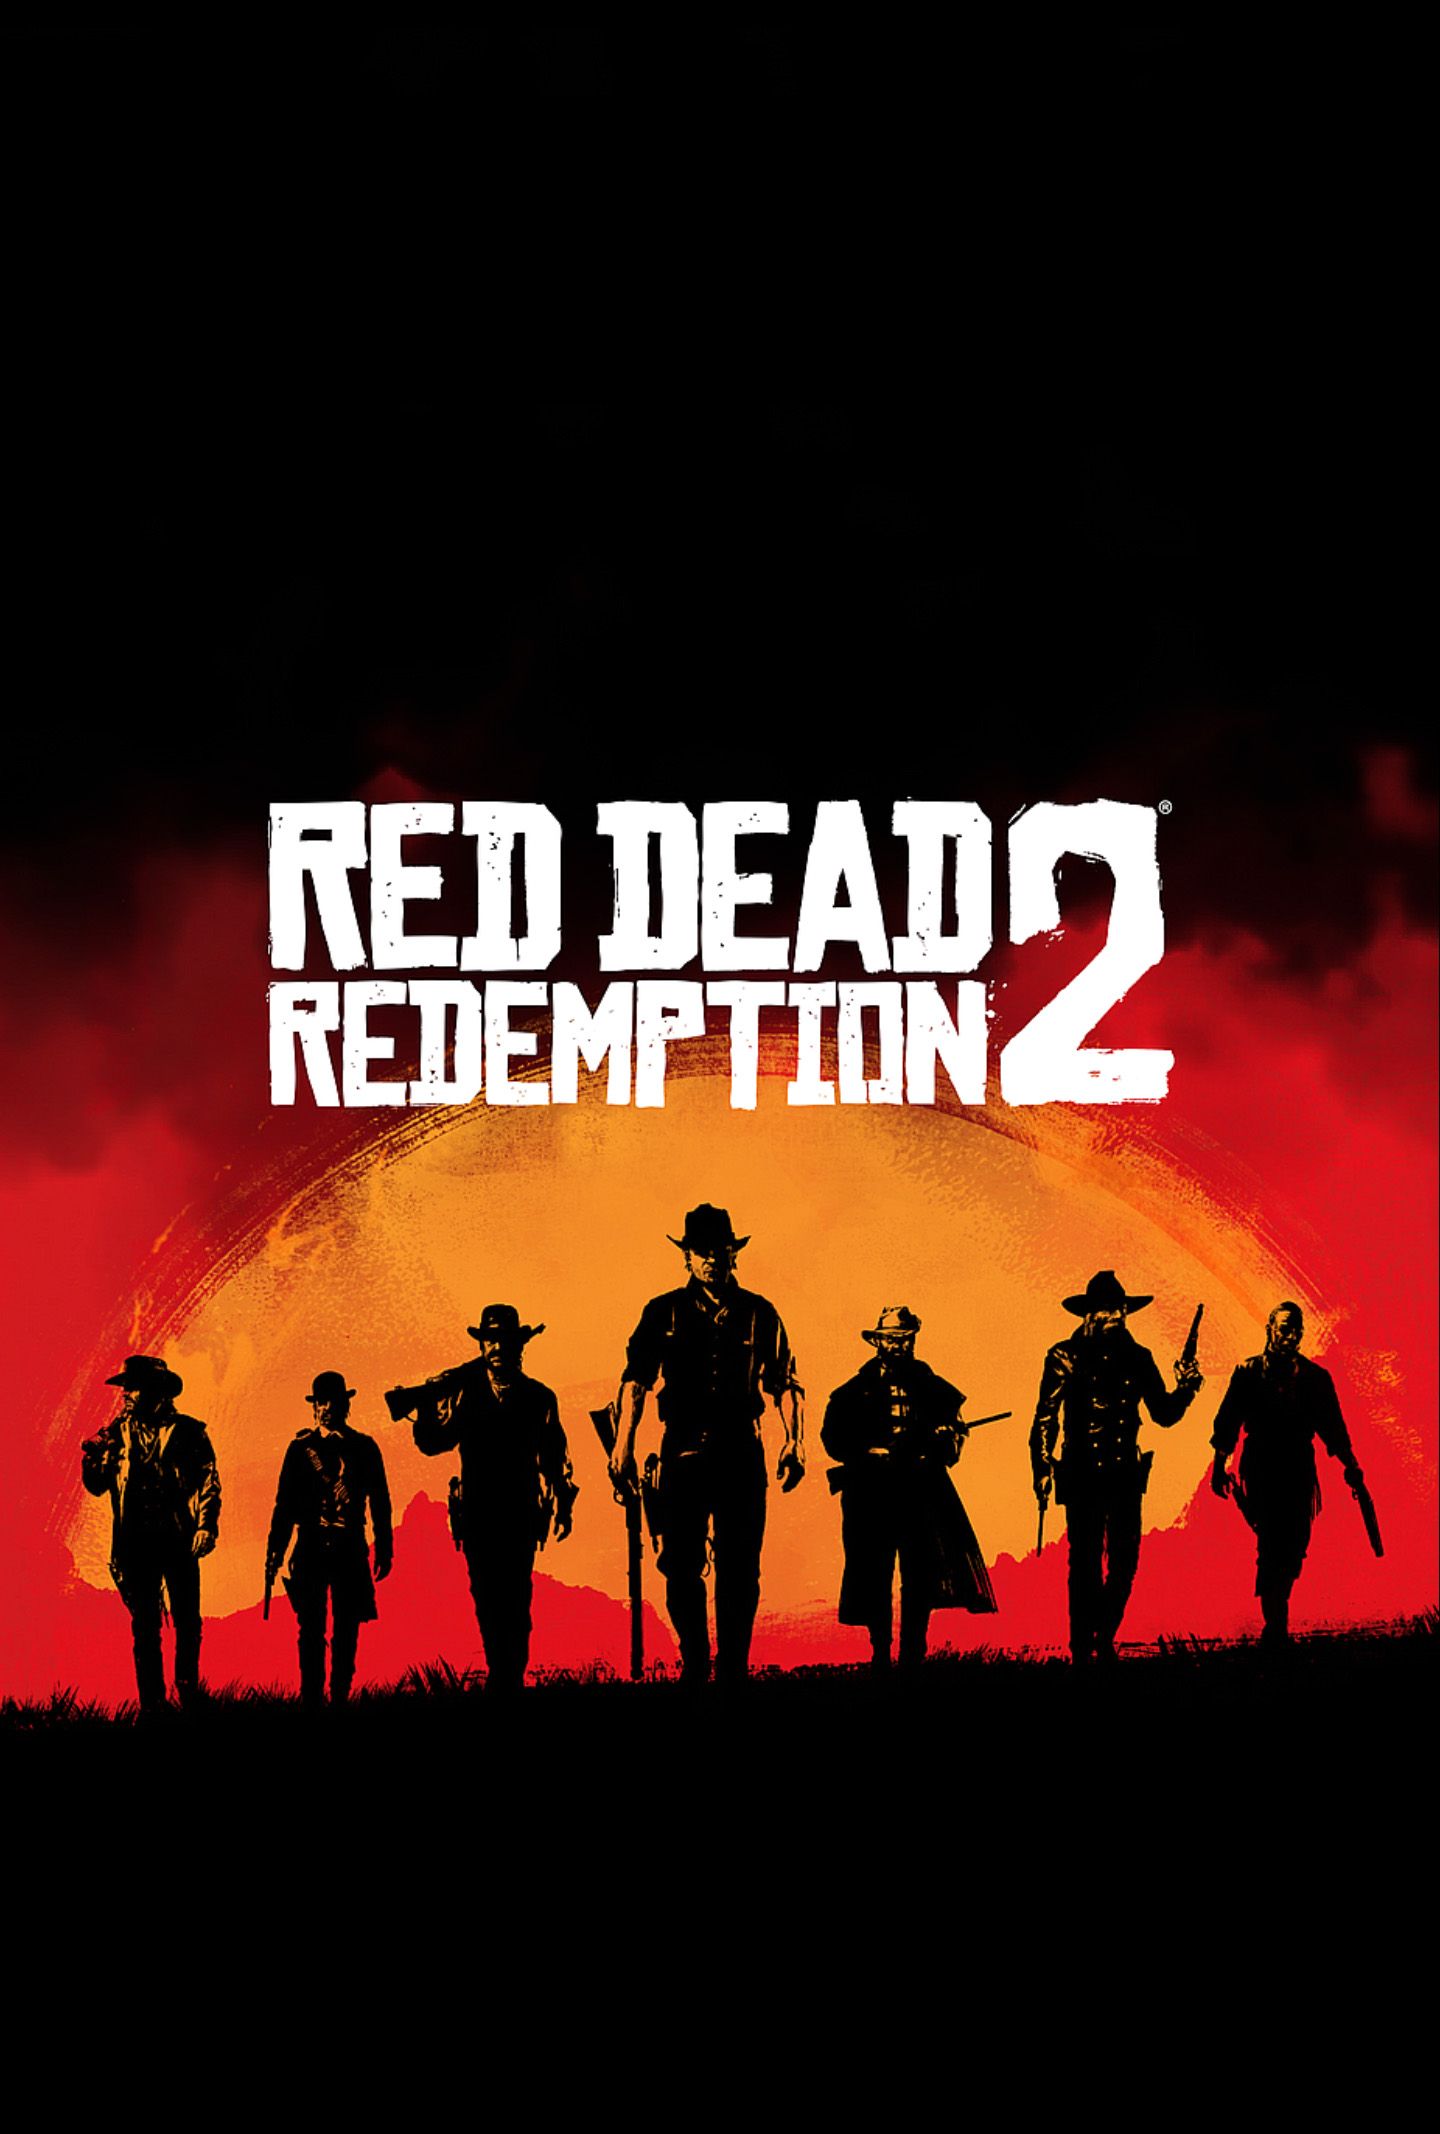 Red Dead Redemption 2 fan poster